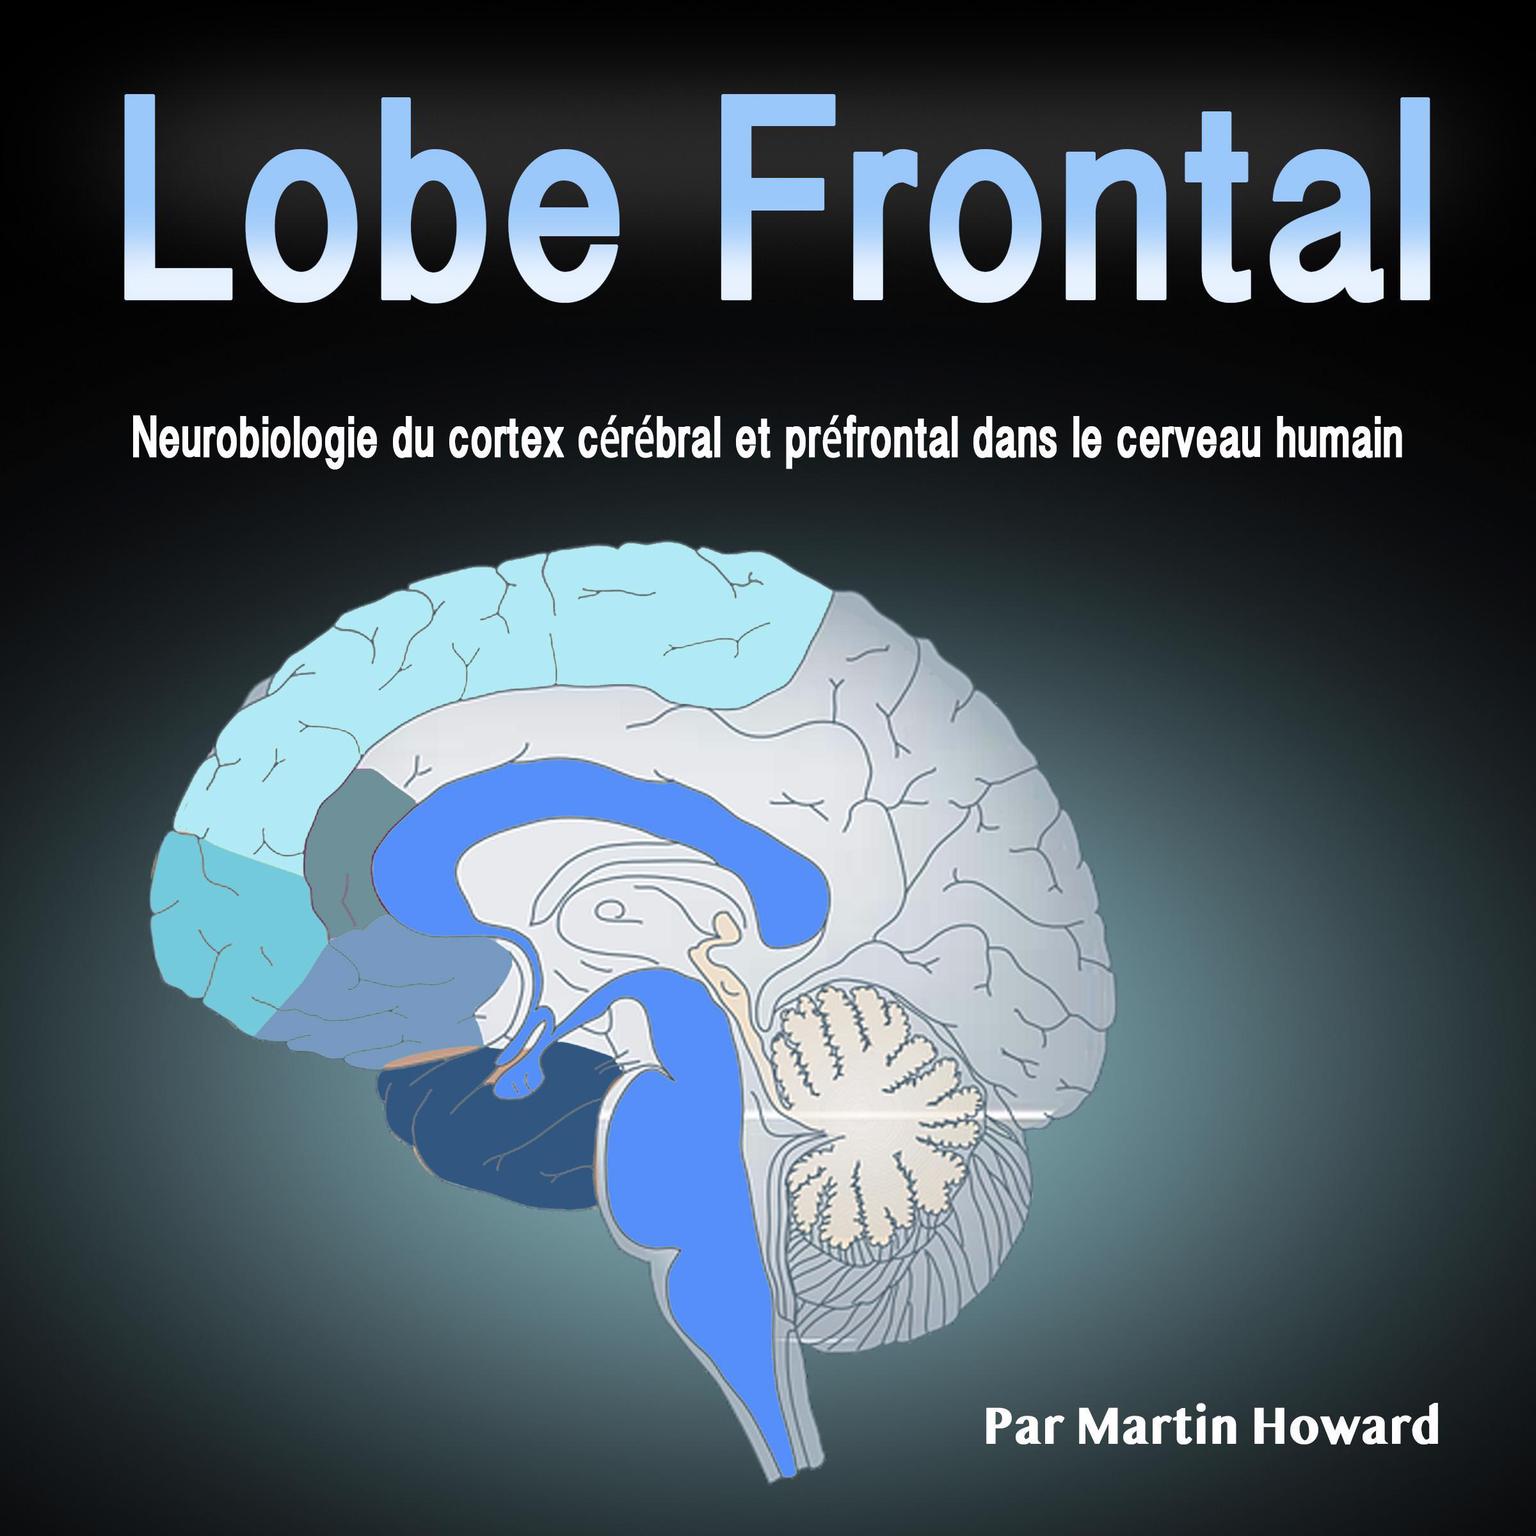 Lobe Frontal: Neurobiologie du cortex cérébral et préfrontal dans le cerveau humain (French Edition) Audiobook, by Martin Howard